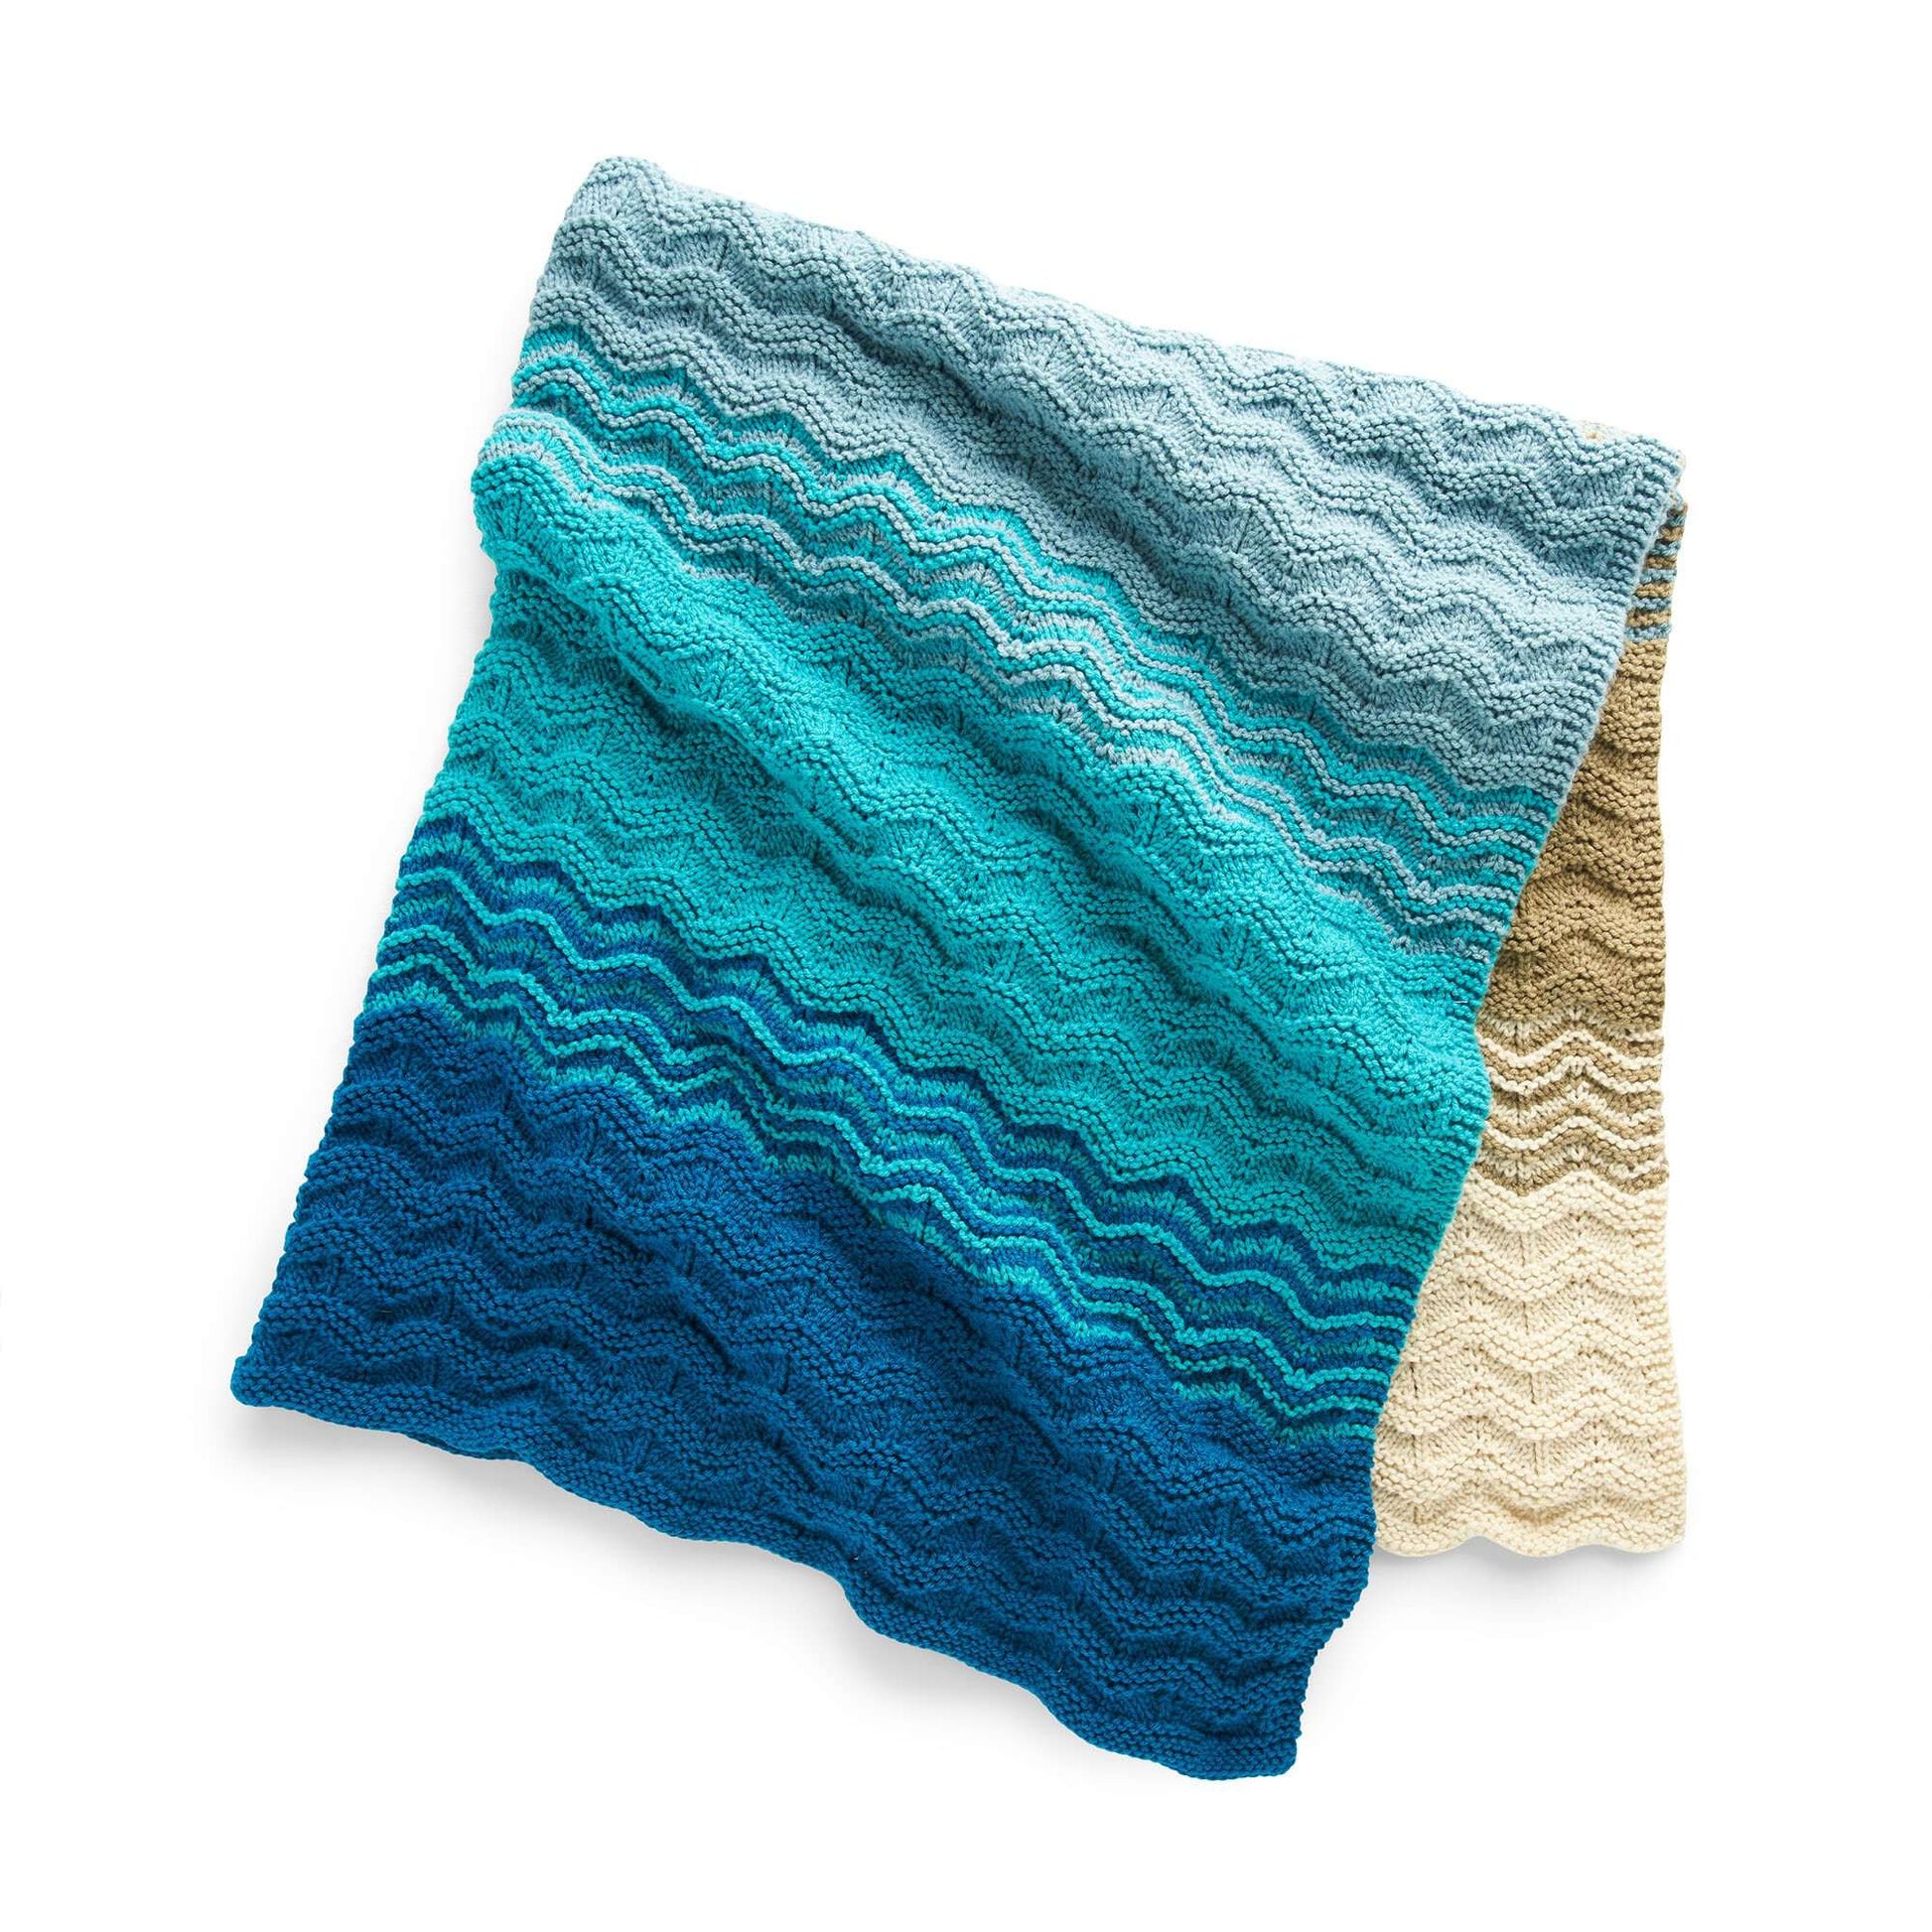 Free Caron Seaside Sunset Knit Blanket Pattern